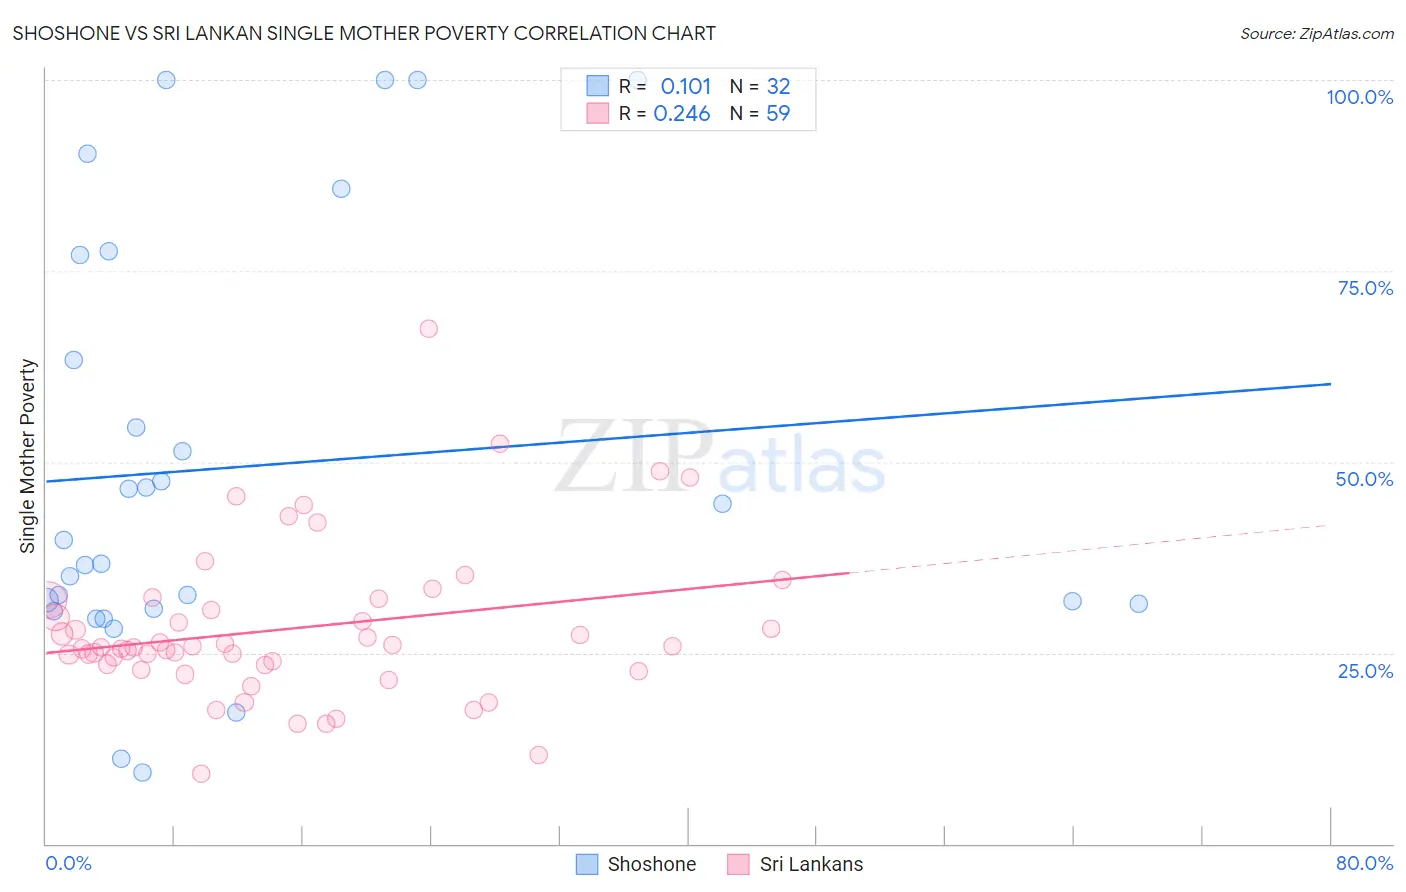 Shoshone vs Sri Lankan Single Mother Poverty